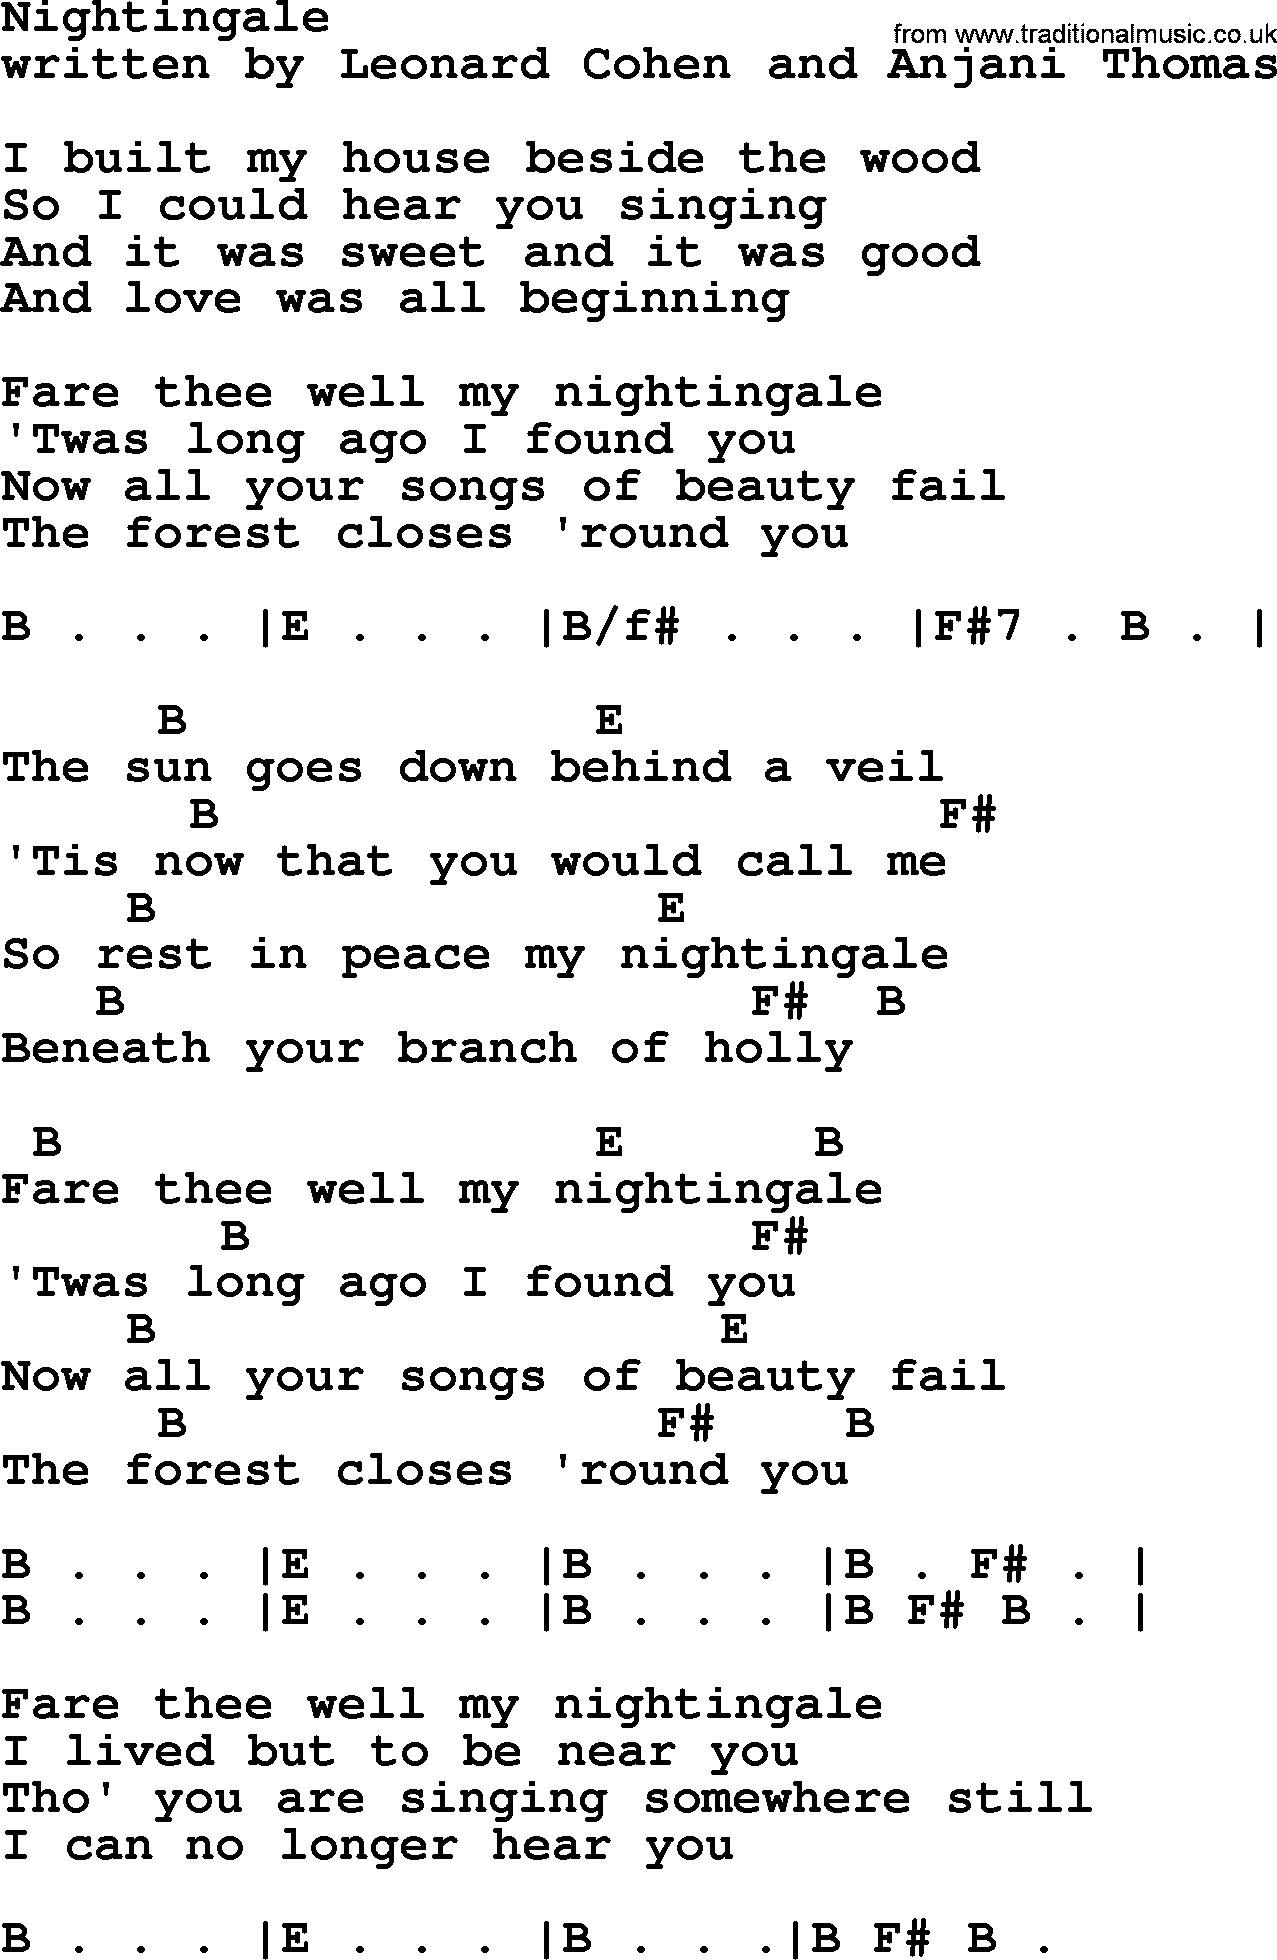 Leonard Cohen song Nightingale, lyrics and chords